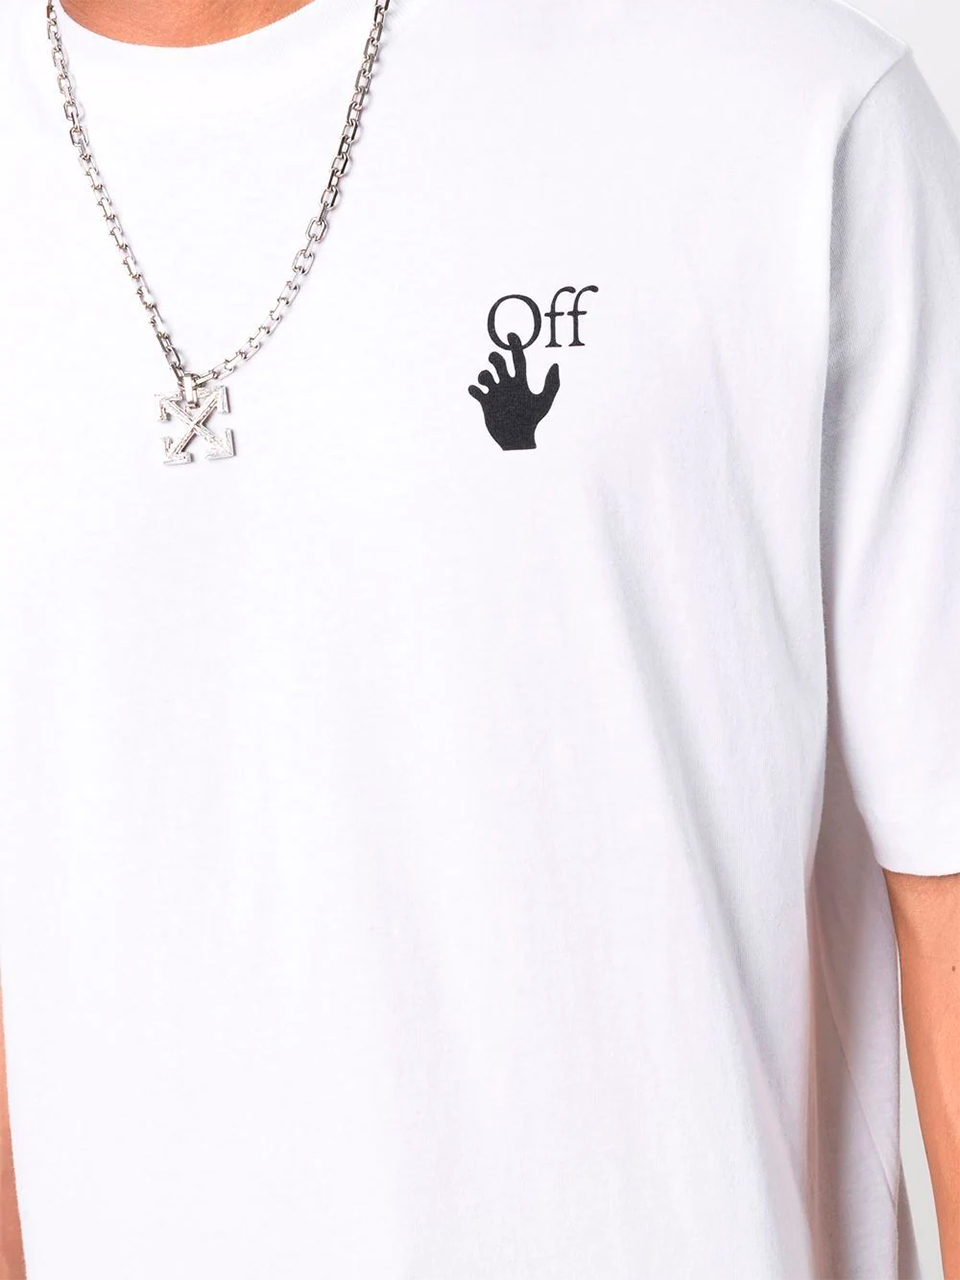 Imagem de: Camiseta Off-White Branca com Logo Hand